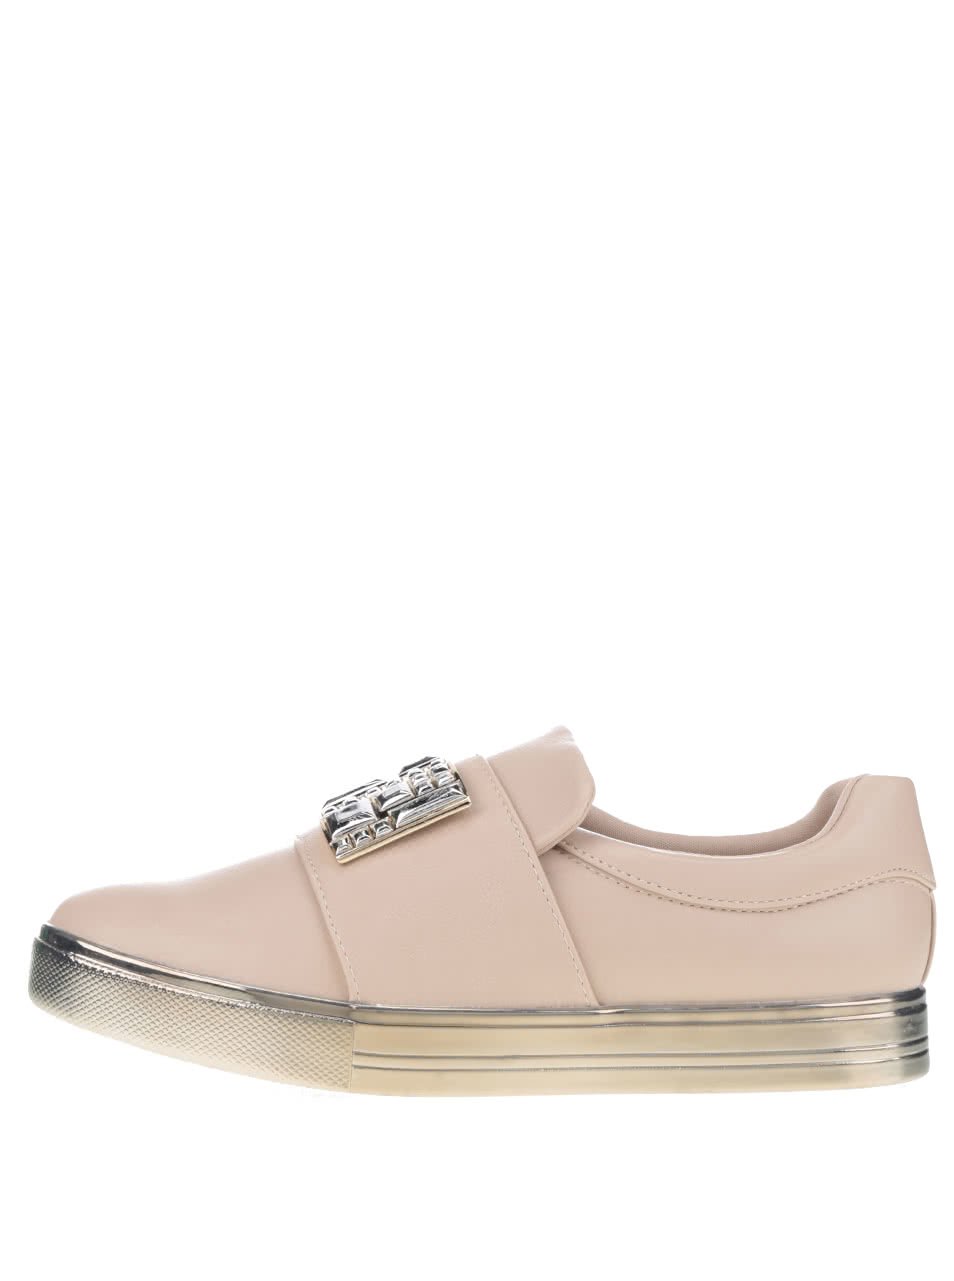 Béžové dámské boty s aplikací ve stříbrné barvě ALDO Ogima